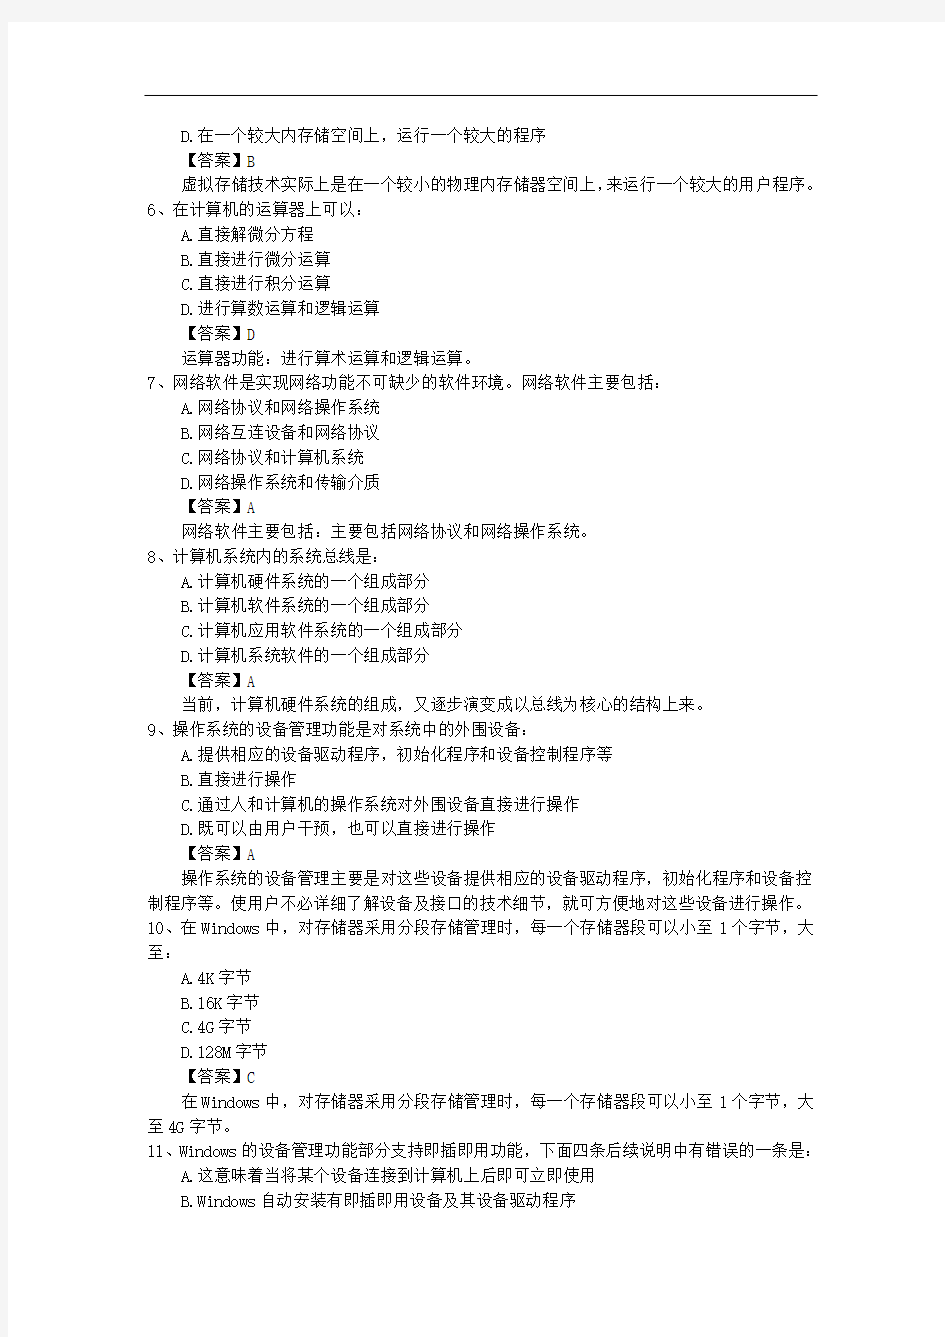 广东省结构工程师考试应试技巧及复习方法每日一练(2014.10.27)